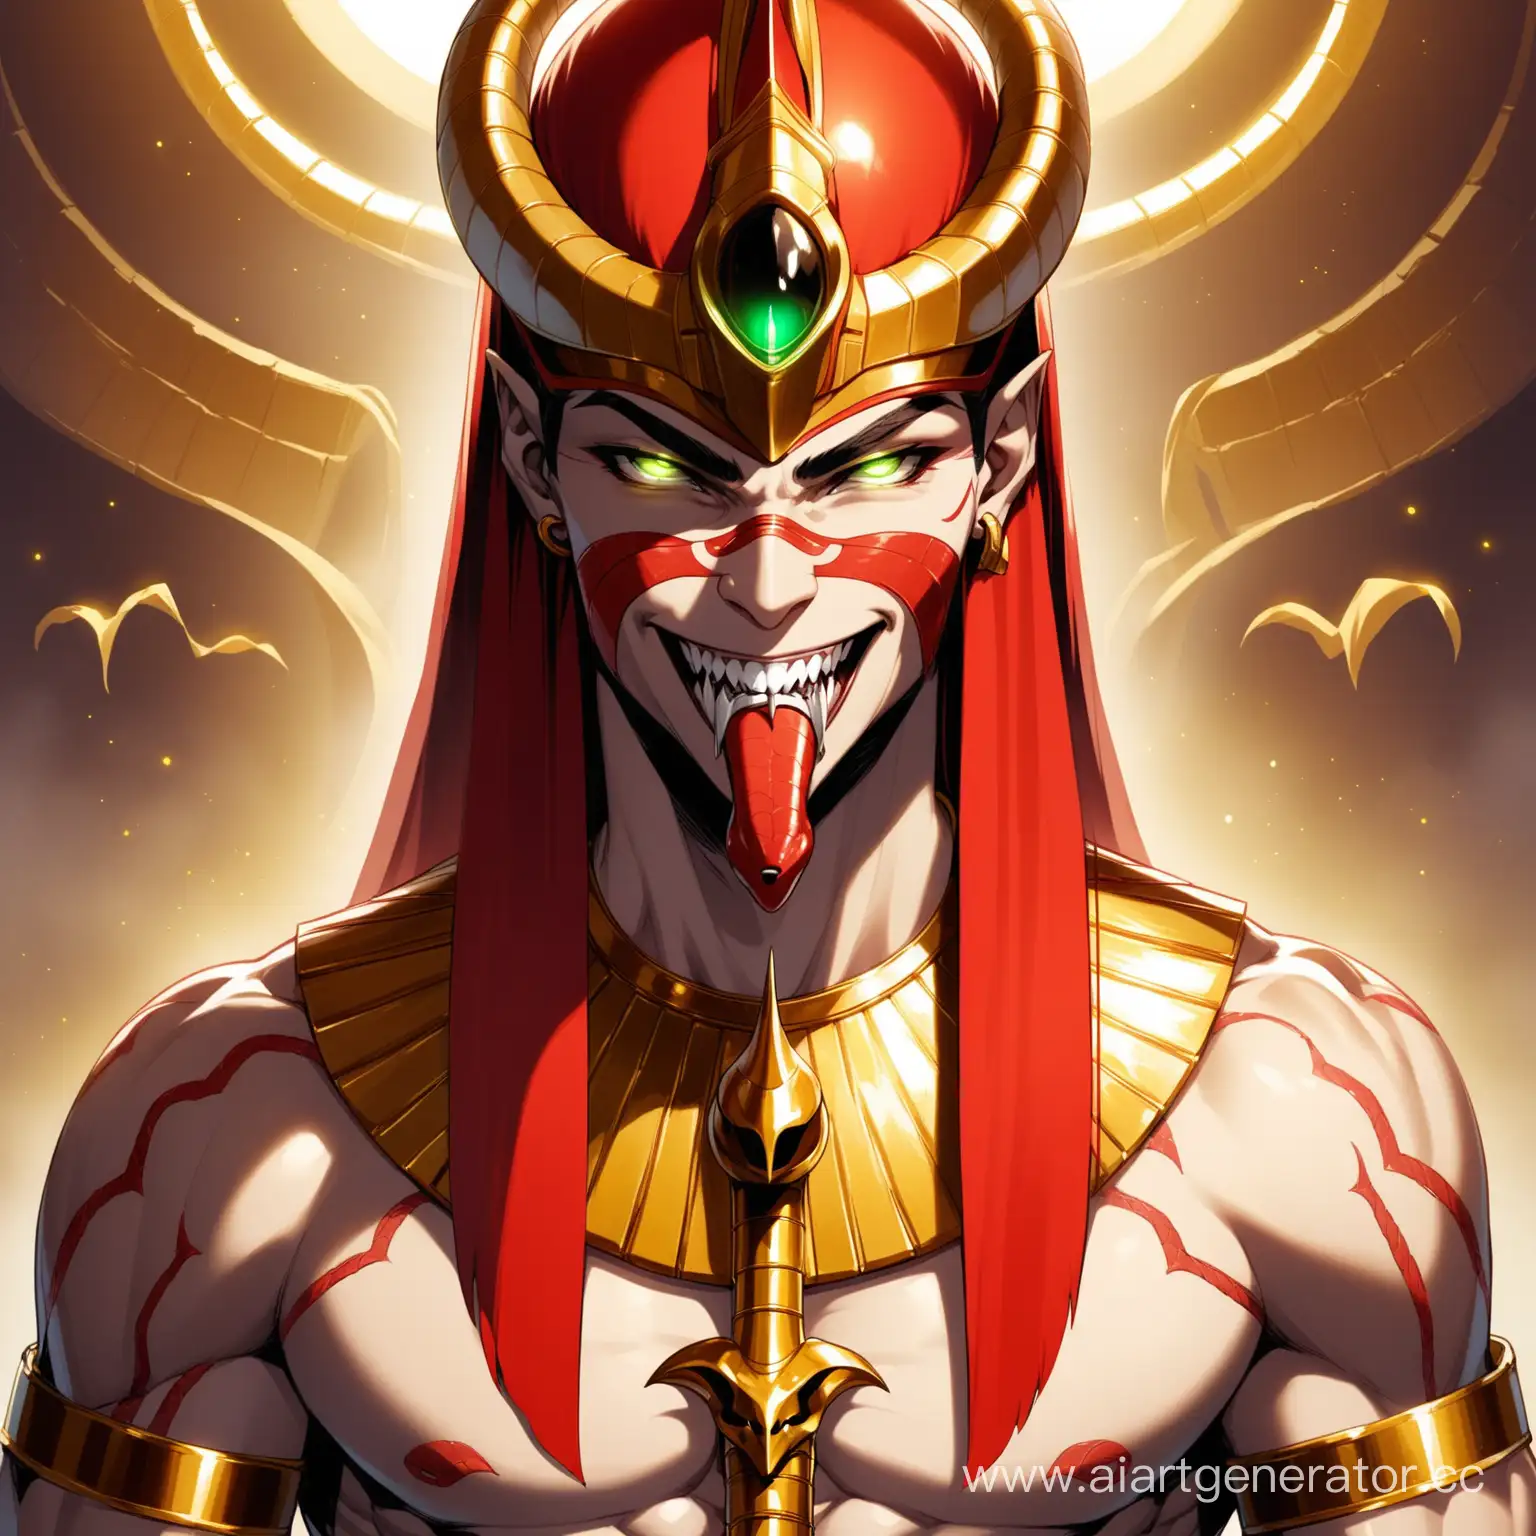 Стройный но не силтно мускулистый 
египетский бог со шлемом в виде красной змеиной головы с клыками наружу , шлем не прикрывает рот , подбородок и щёки , лицо у бога молодое и красивое, фата за шлемом чёрная и с золотыми краями , лица не видно но видно ярко-красные длинные волосы , кожа бледная и есть пара шрамов , на лице свирепая клыкастая улыбка , в руке посох на конце которого змея 